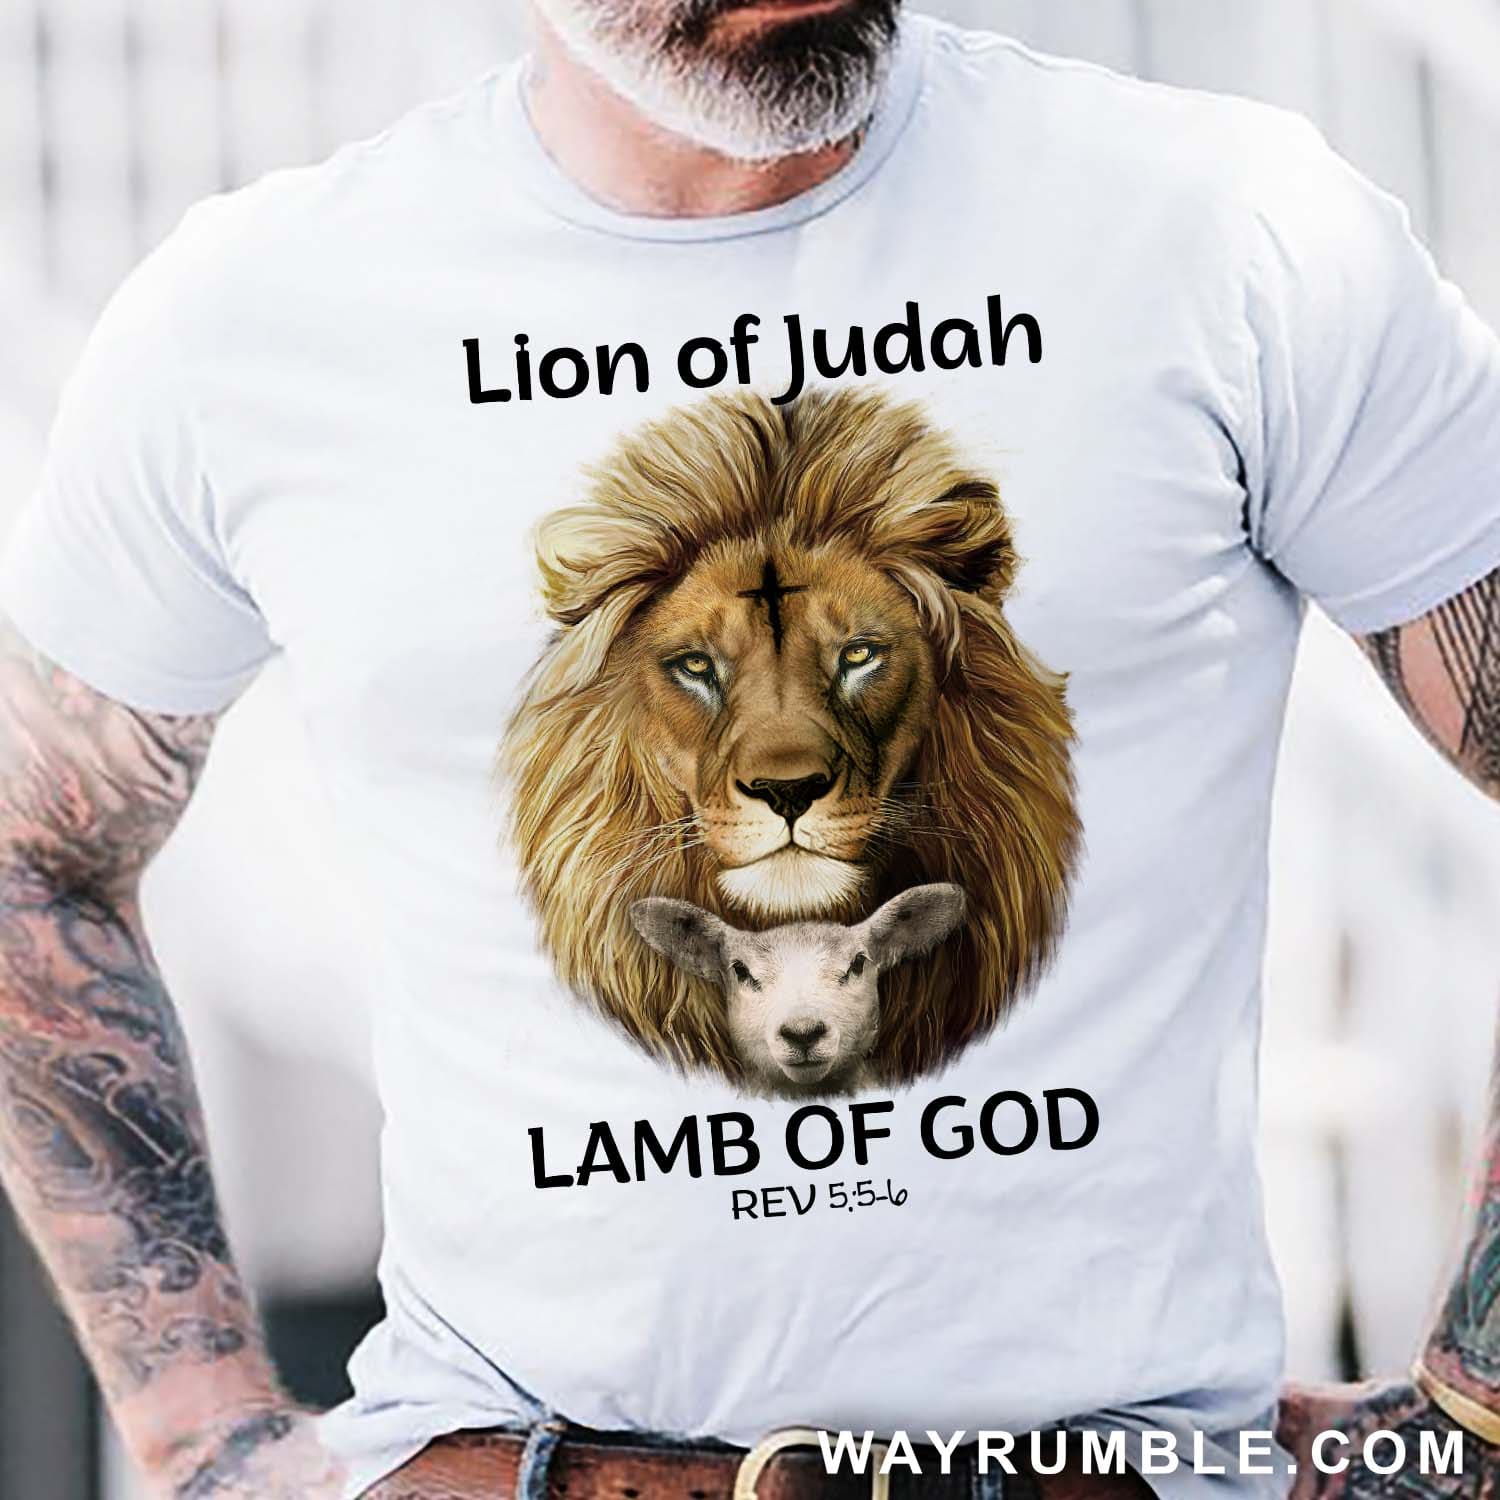 Lion of Judah, Lamb of God, The incredible duo – Jesus T Shirt